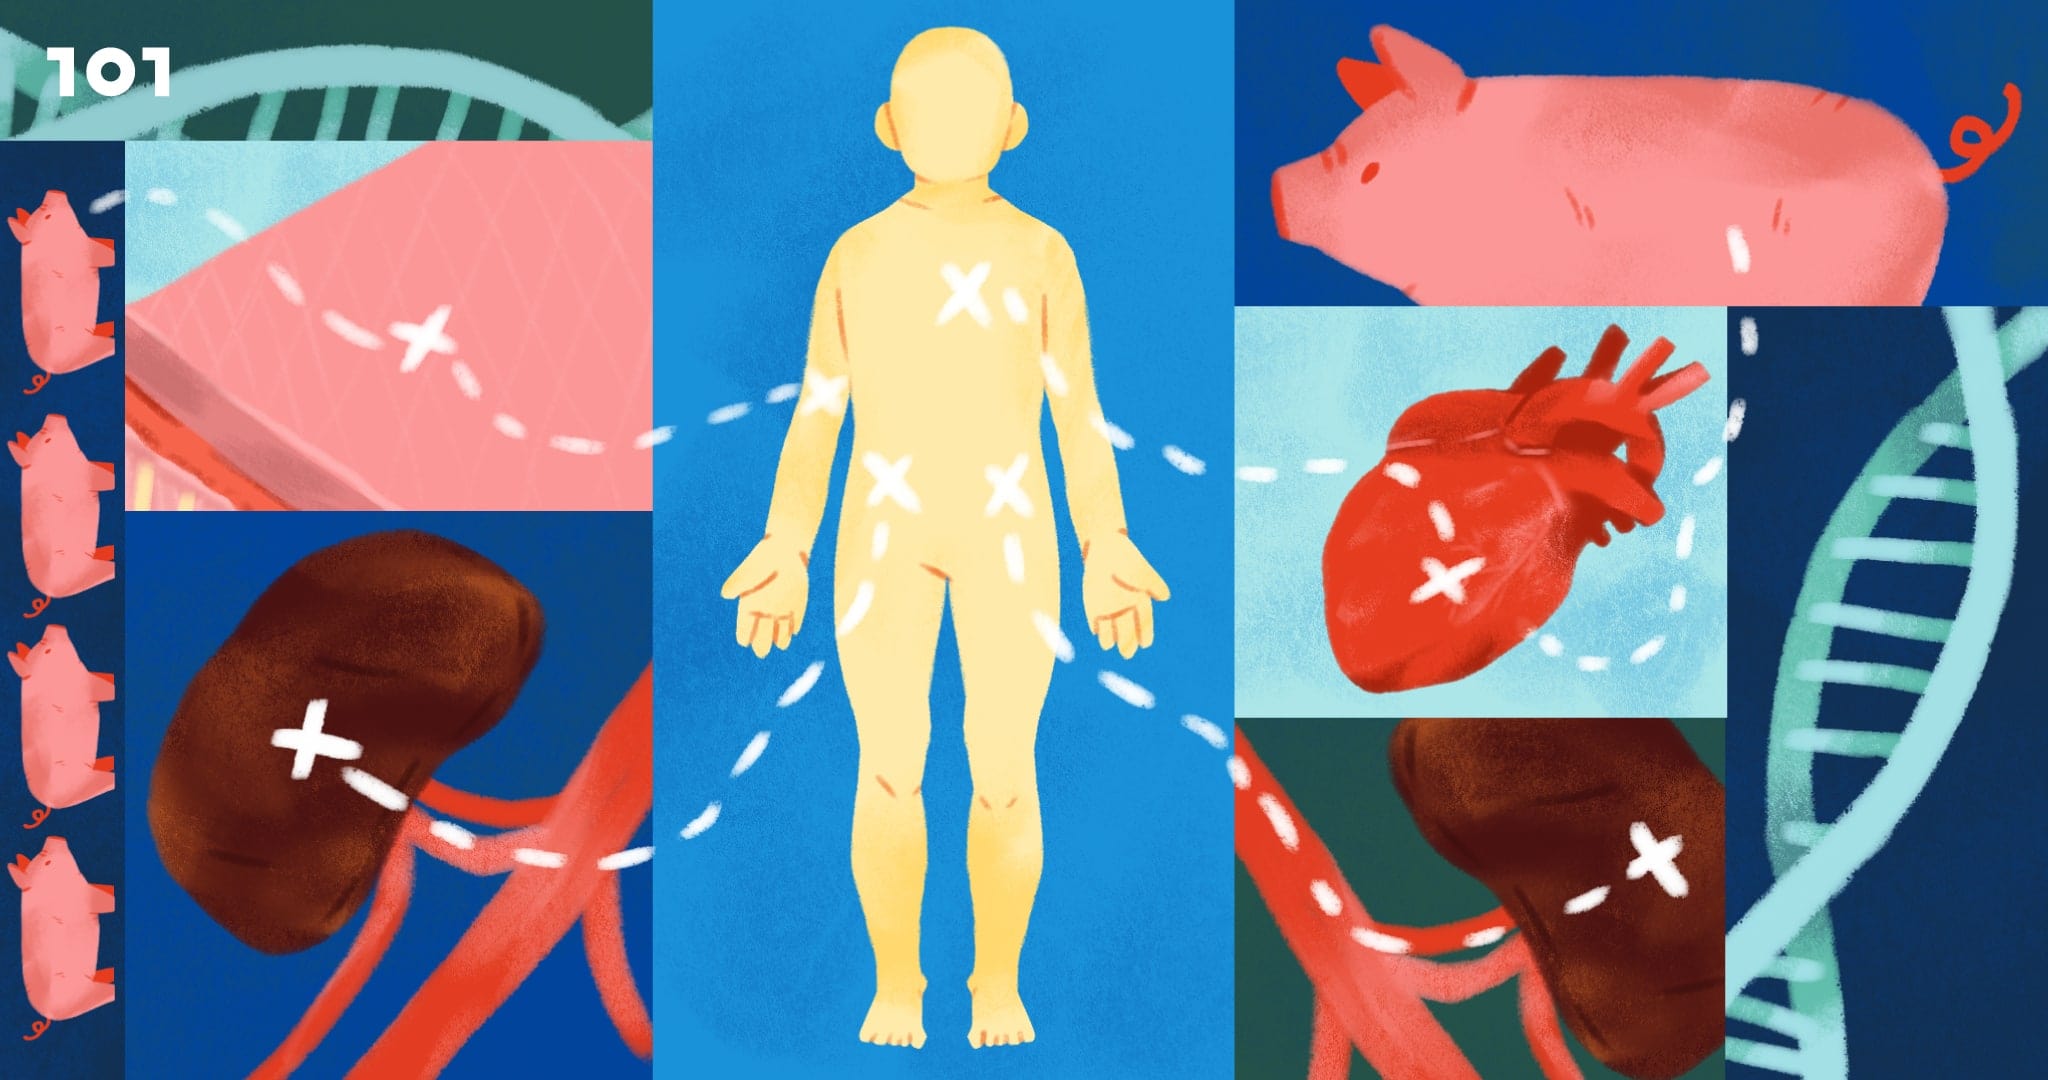 'อวัยวะหมู' สู่ 'ร่างกายมนุษย์' : การปลูกถ่ายอวัยวะที่อาจเกิดขึ้นในปีนี้